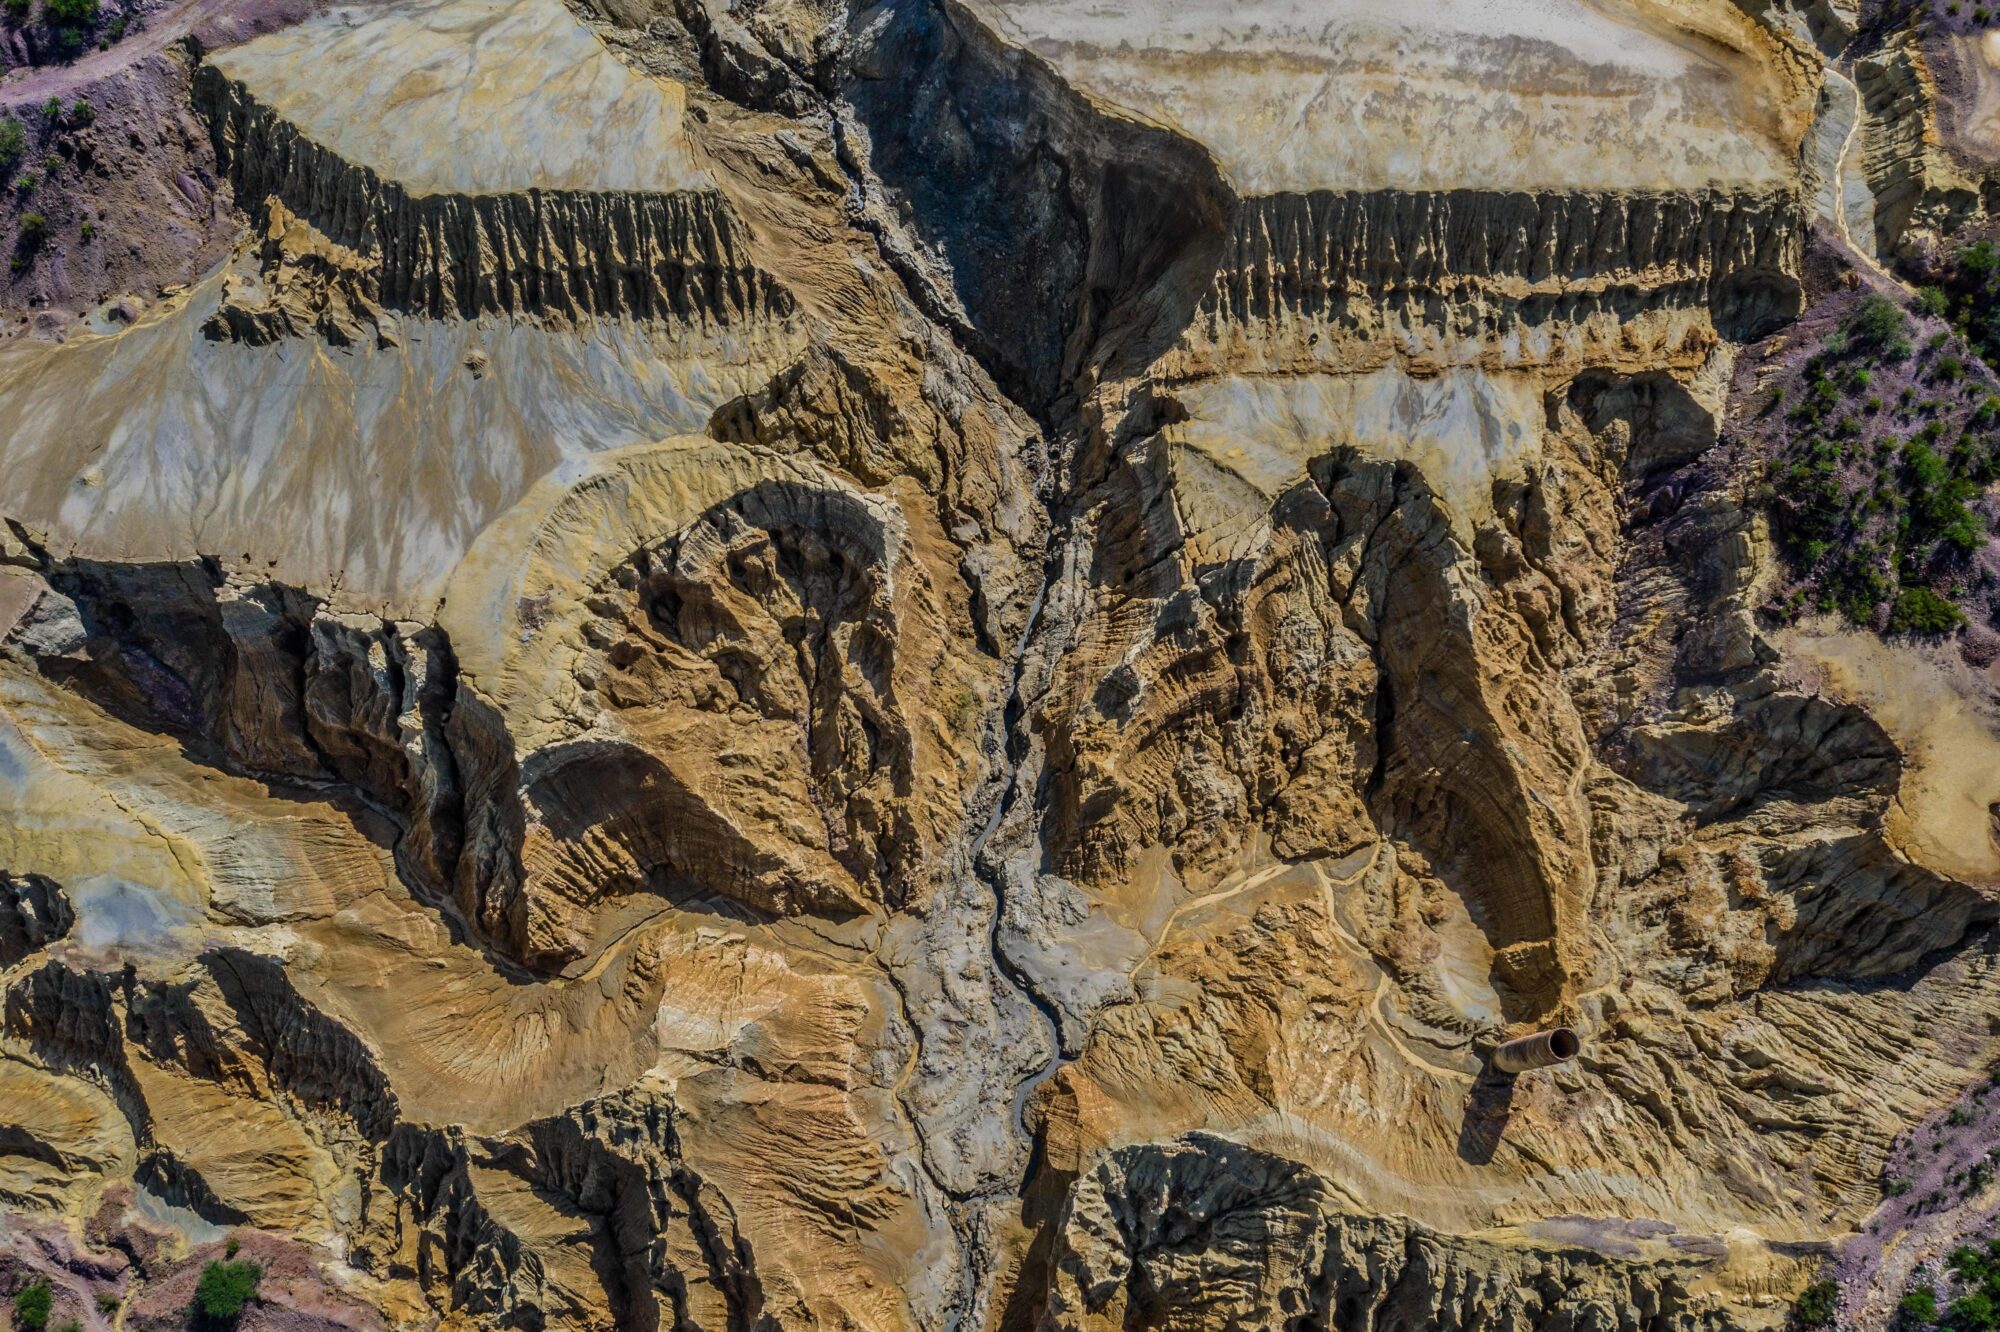 <p>Vista aérea de uma antiga mina de cobre, com resíduos da exploração, no estado de Sonora, no México (Imagem: Luis Gutierrez / Alamy)</p>